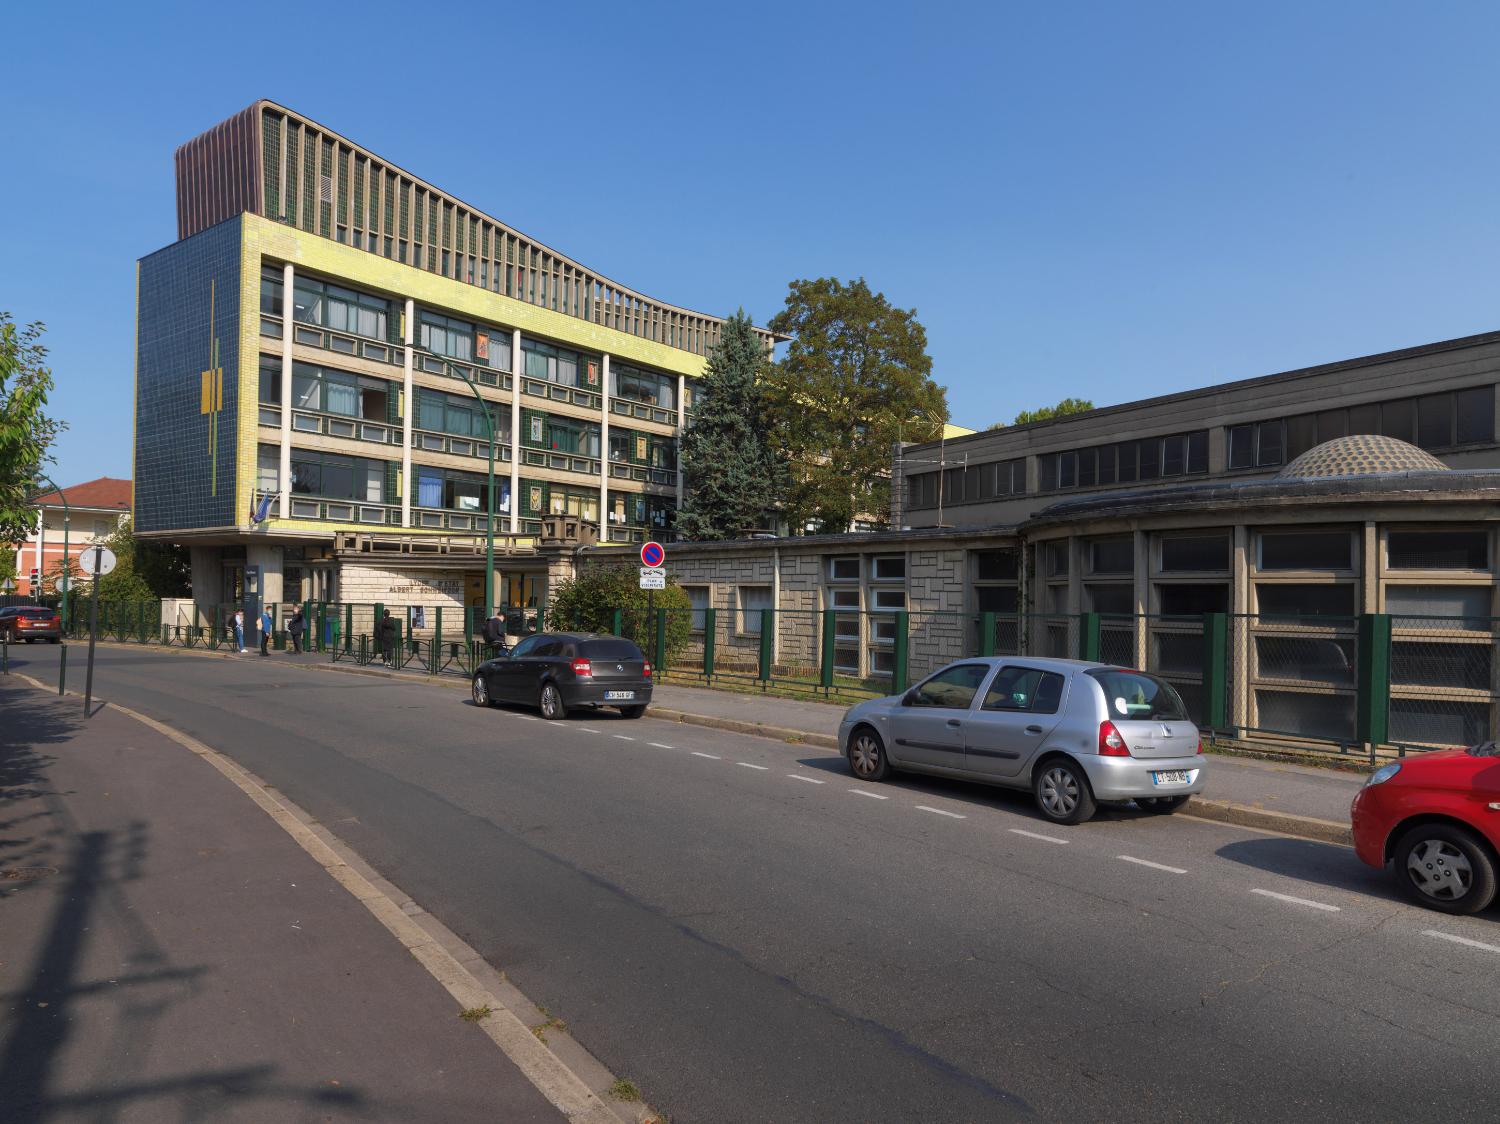 Lycée Albert-Schweitzer